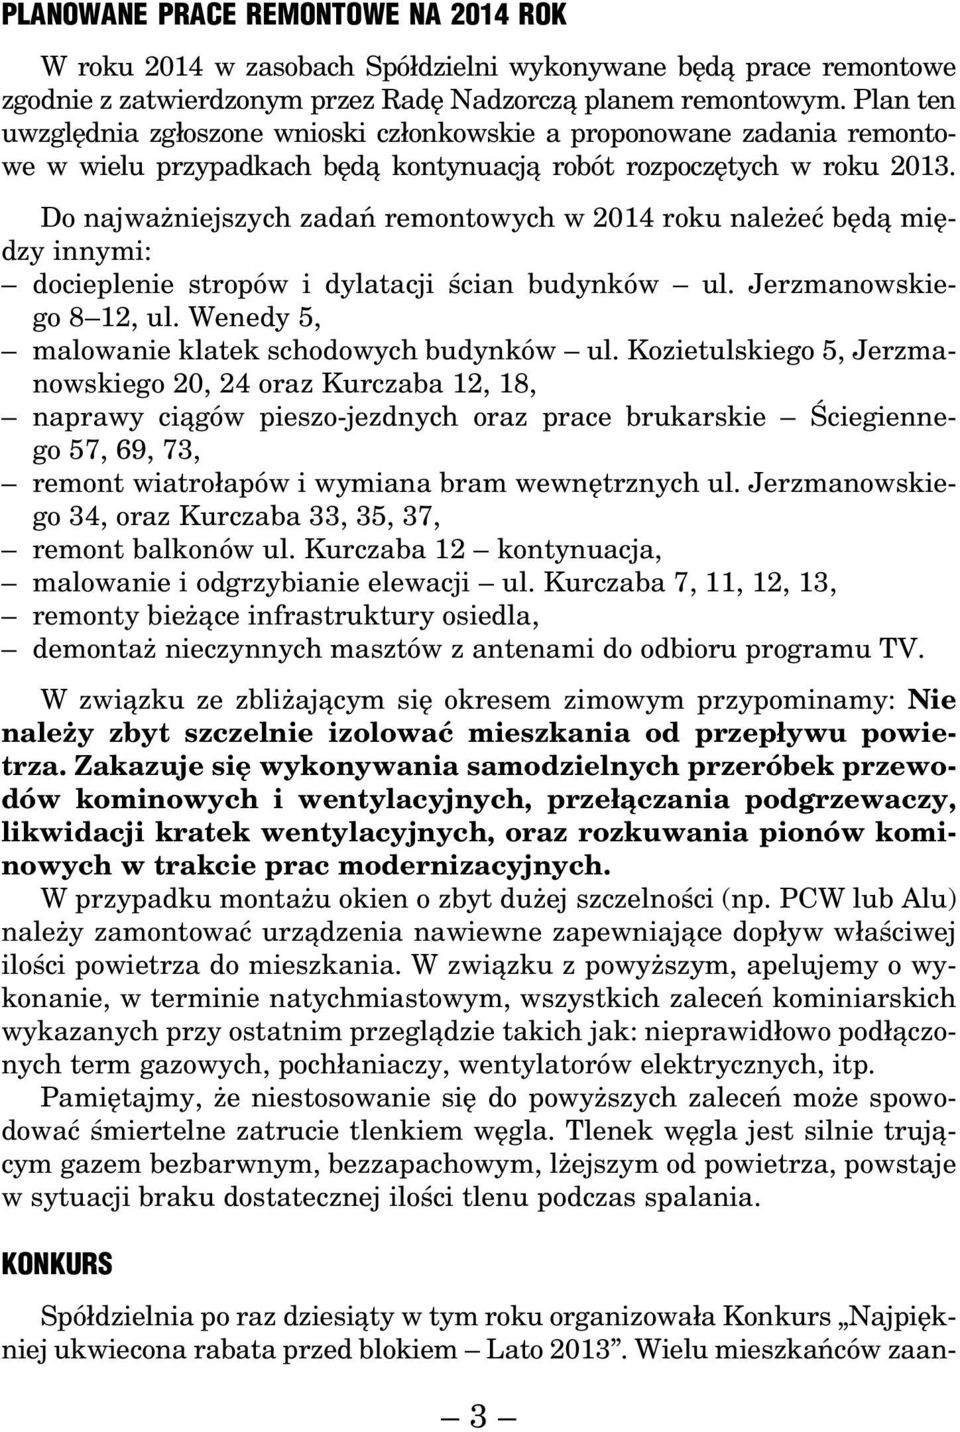 Do najważniejszych zadań remontowych w 2014 roku należeć będą między innymi: docieplenie stropów i dylatacji ścian budynków ul. Jerzmanowskiego 8 12, ul.